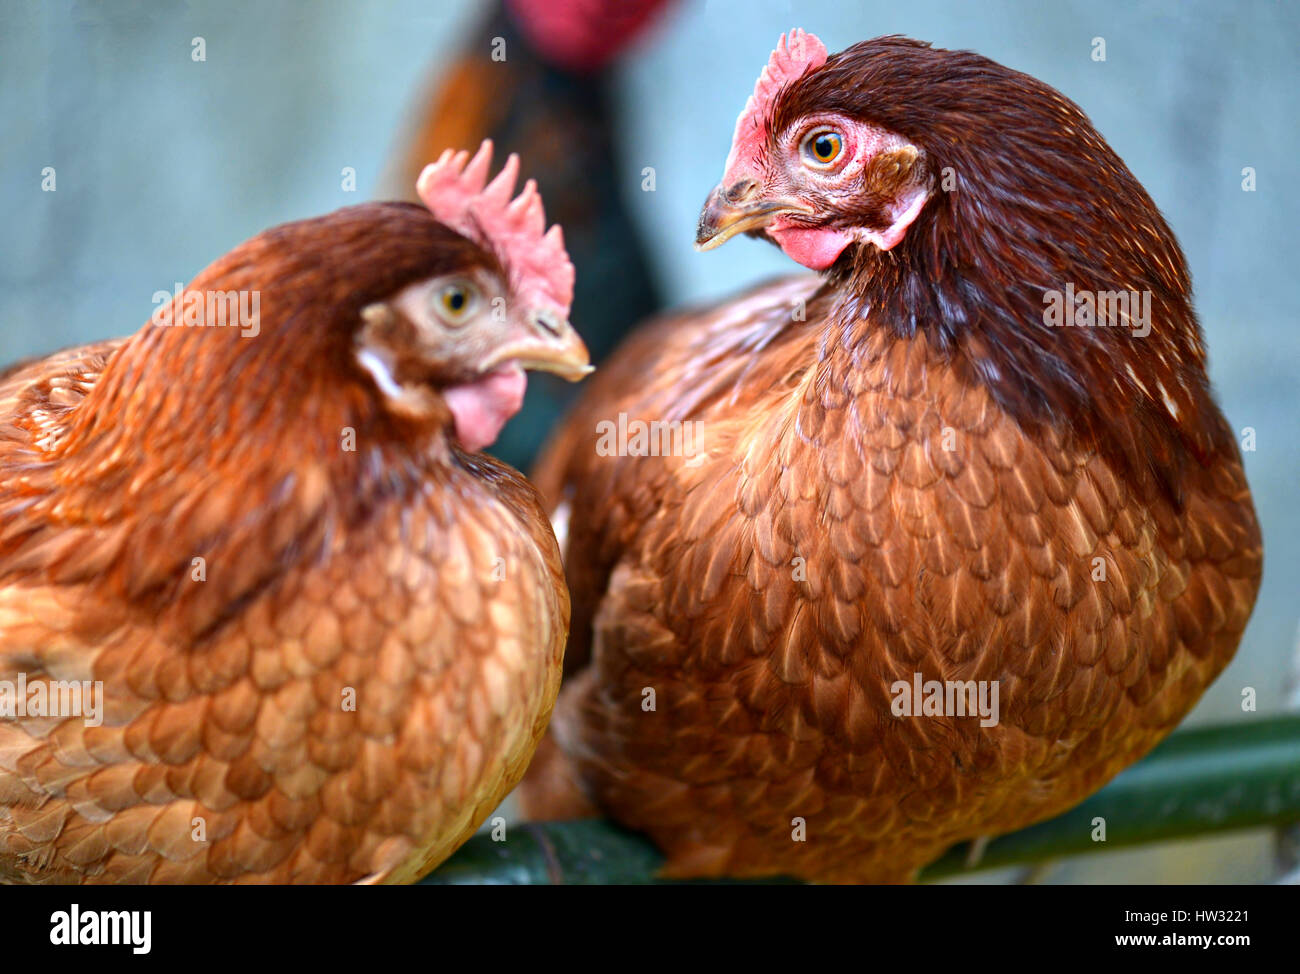 Hen junge Hybrid Huhn in Vieh Bauernhof Foto in niedrigen Innenbeleuchtung und harte Contras Prozess. Stockfoto